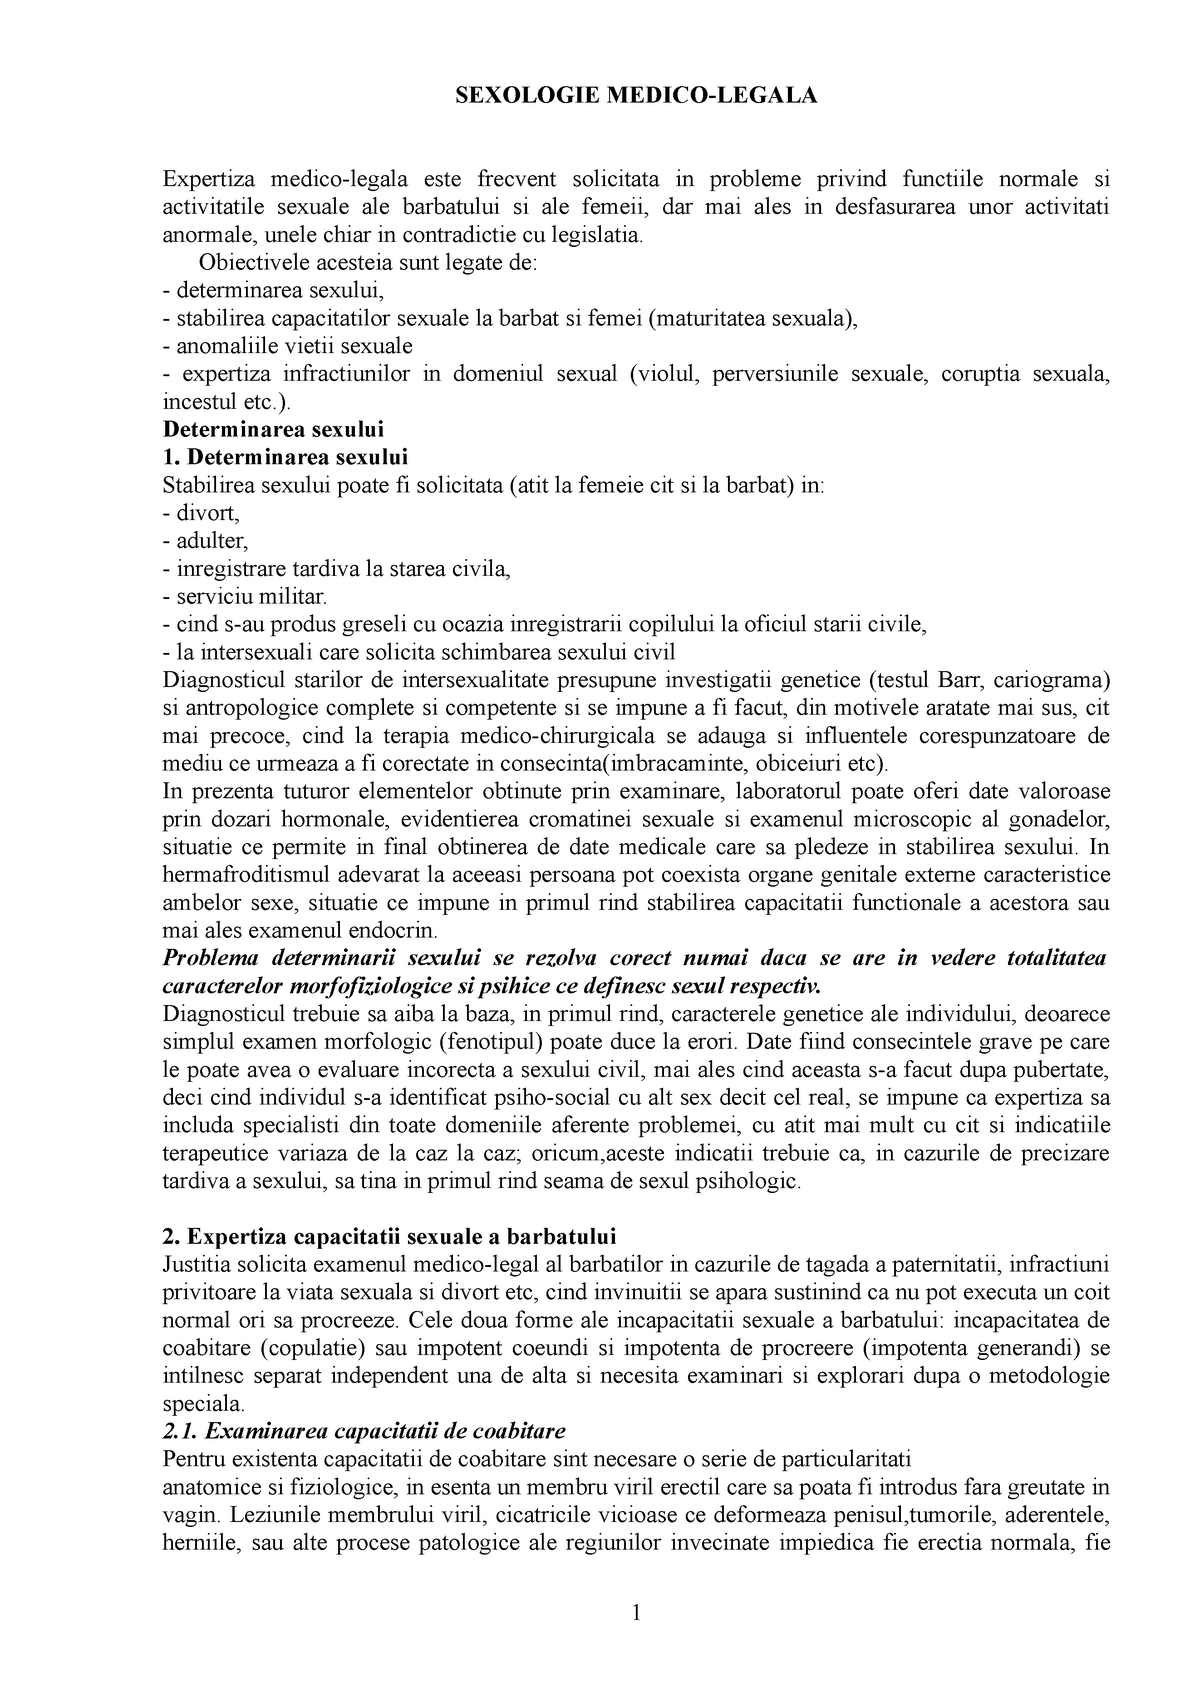 second hand spherical Useful CURS 7 Sexologie medico-legala 1 - SEXOLOGIE MEDICO-LEGALA Expertiza  medico-legala este frecvent - StuDocu